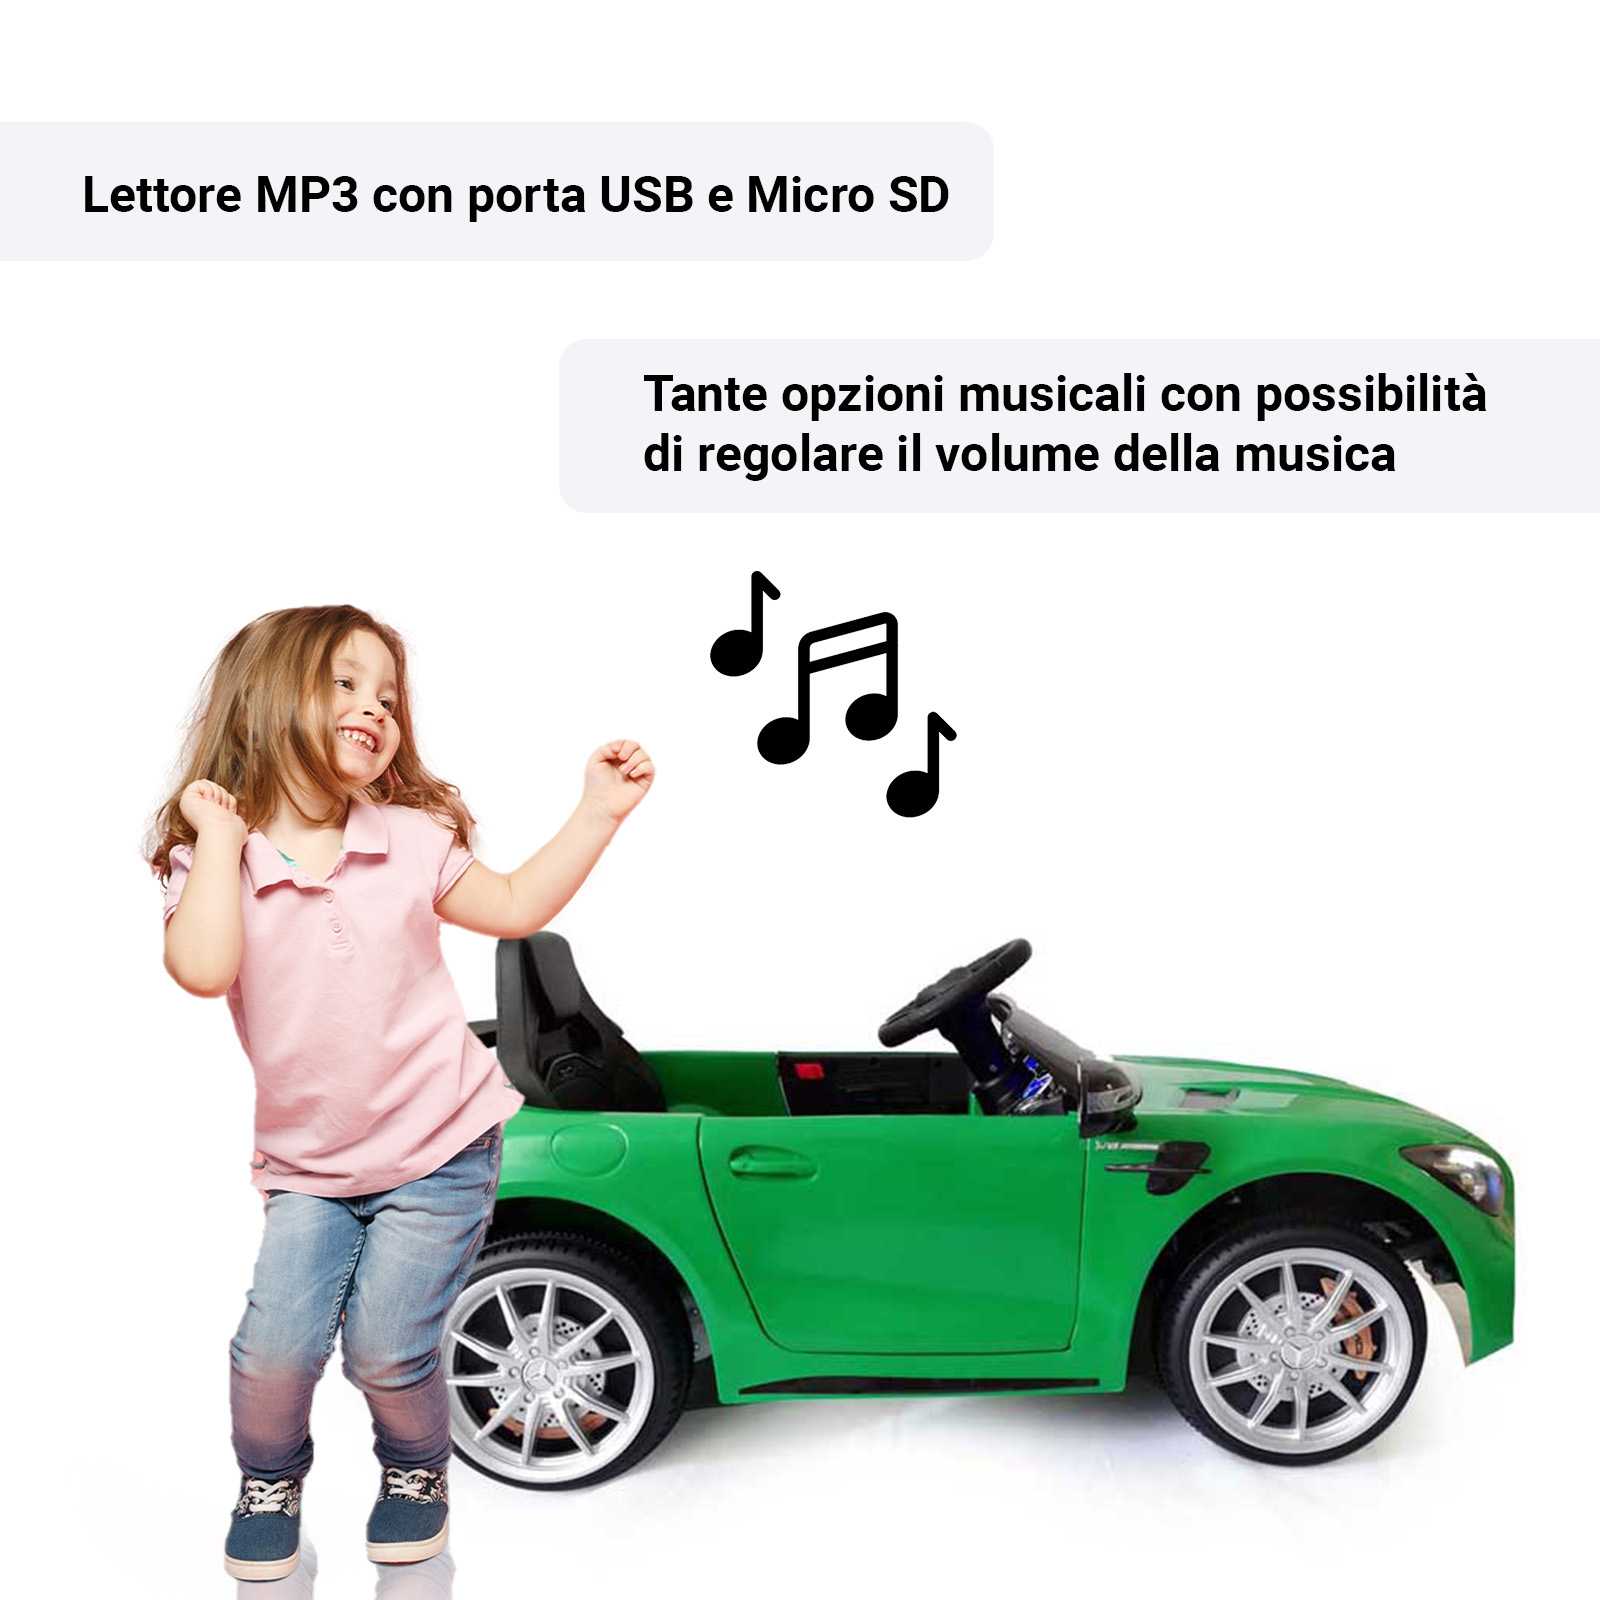 Lettore MP3 con porta USB e Micro SD